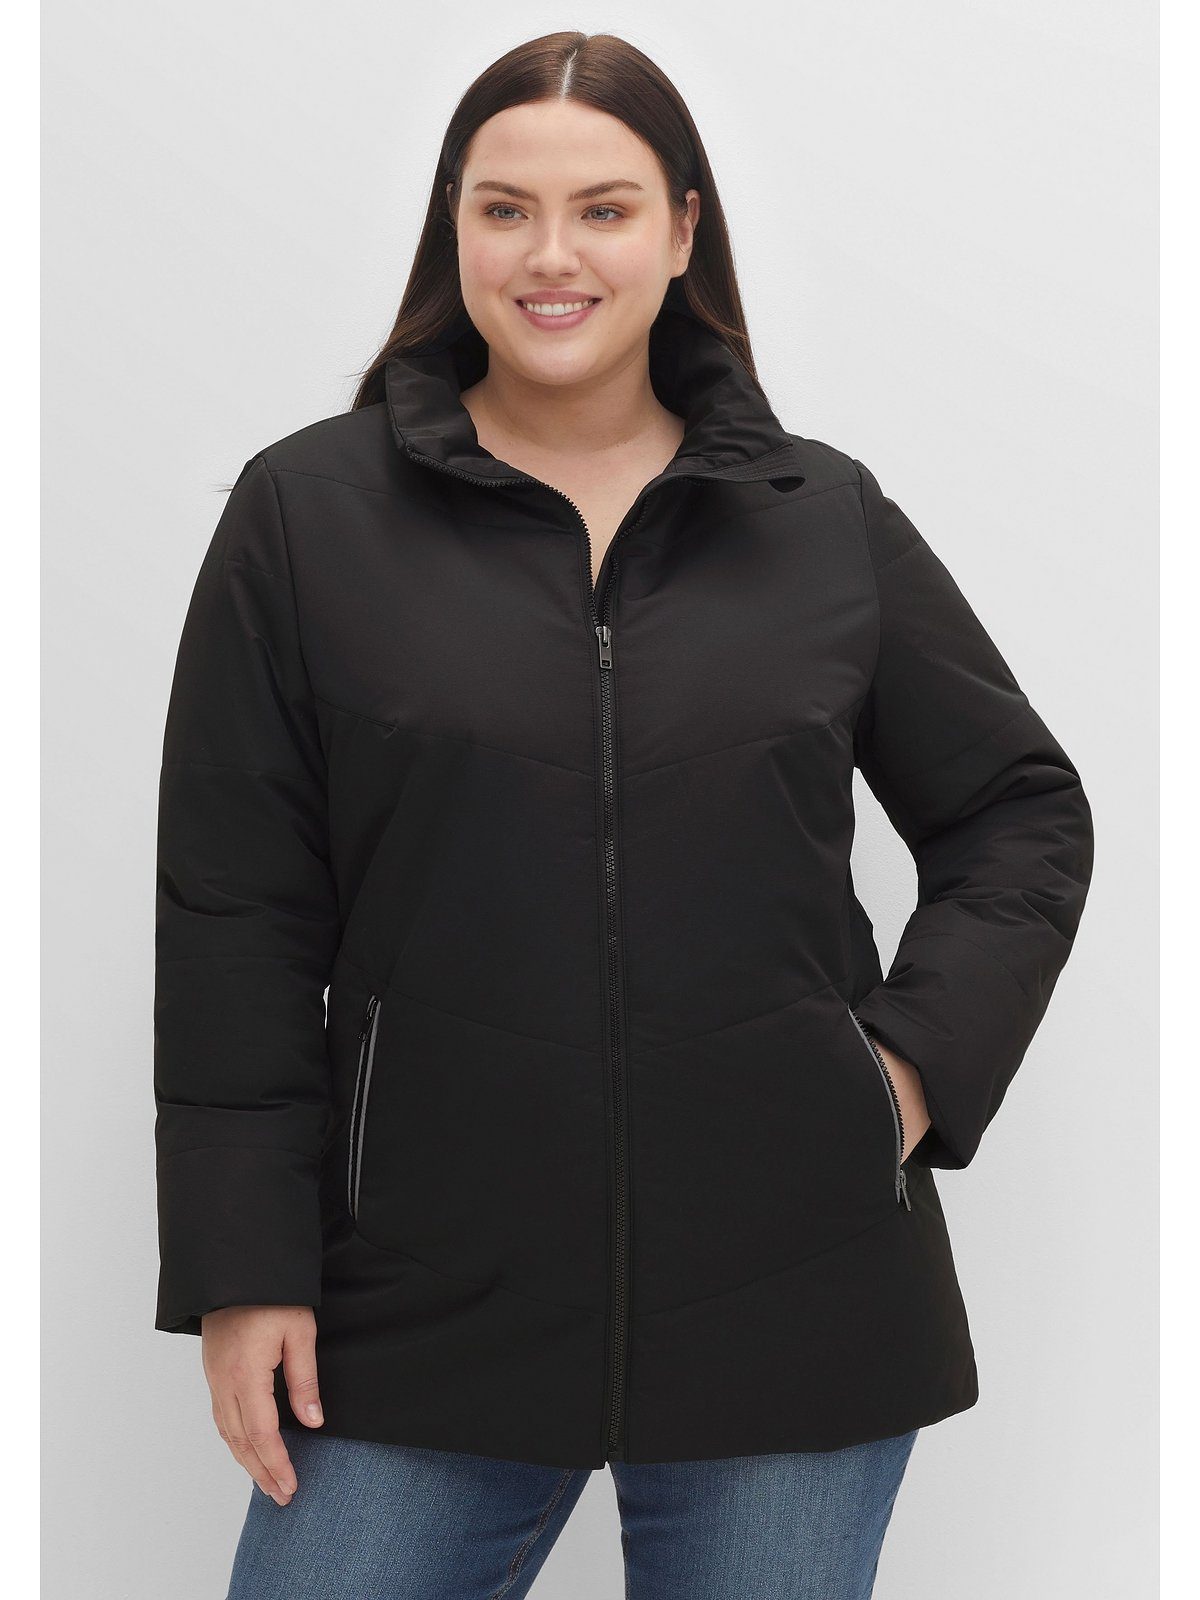 Sheego Outdoorjacke Große Größen mit Stehkragen, leicht strukturiertes Material schwarz | Jacken